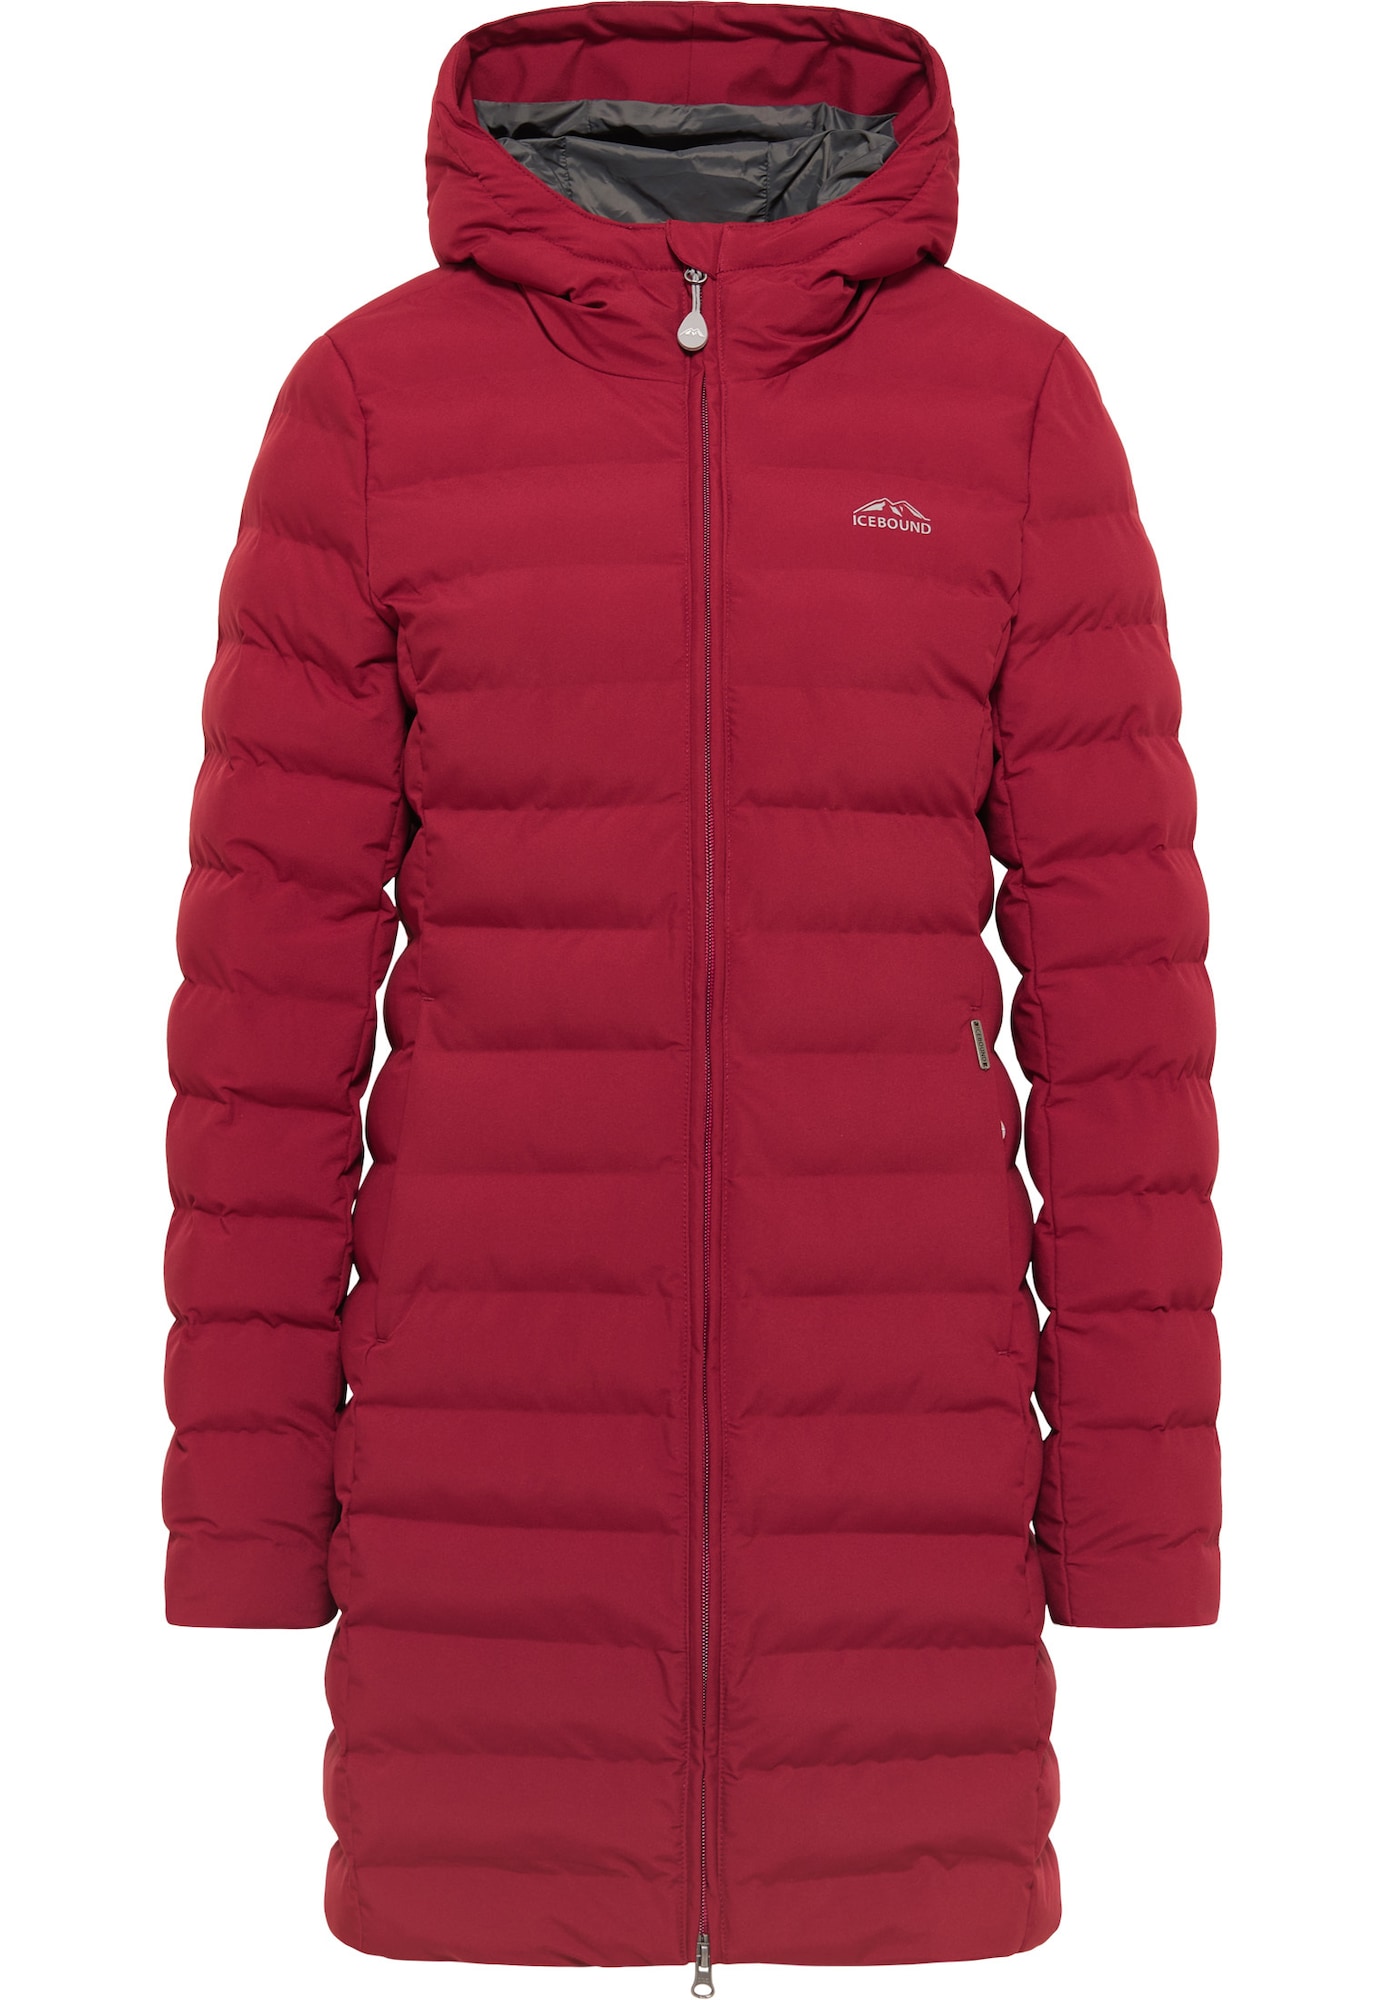 ICEBOUND Funkcionalna jakna  temno rdeča